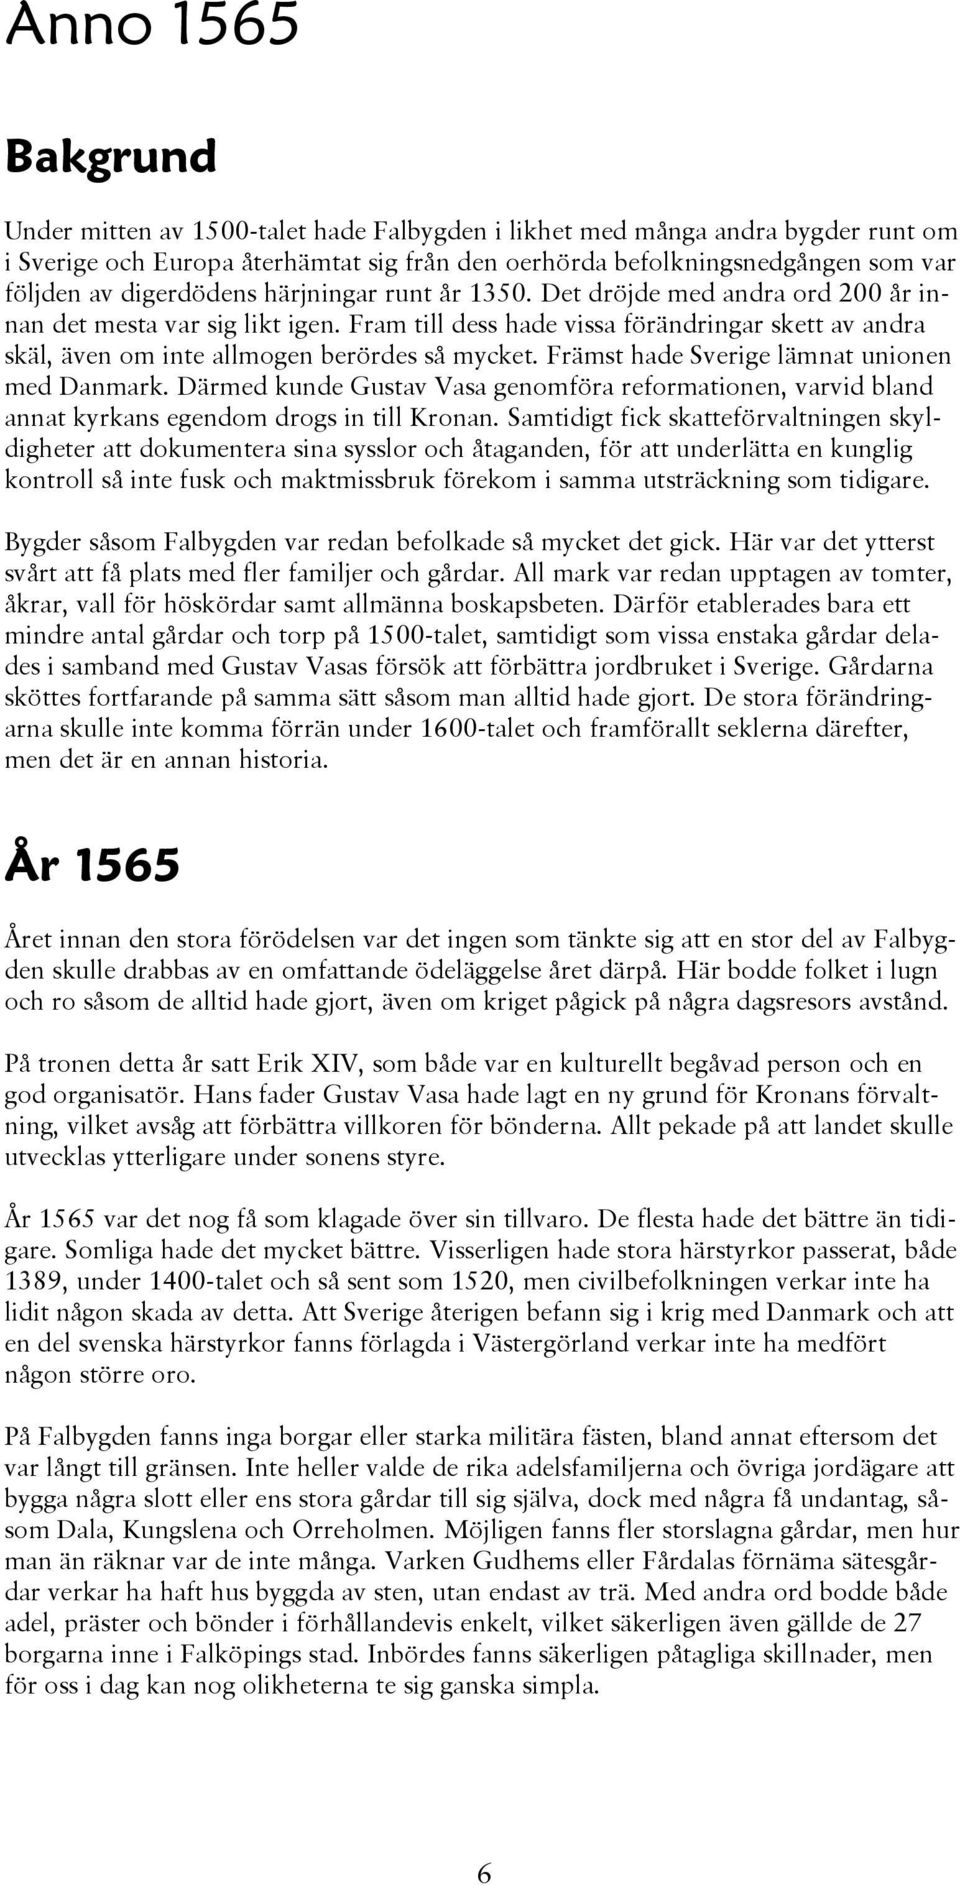 Främst hade Sverige lämnat unionen med Danmark. Därmed kunde Gustav Vasa genomföra reformationen, varvid bland annat kyrkans egendom drogs in till Kronan.